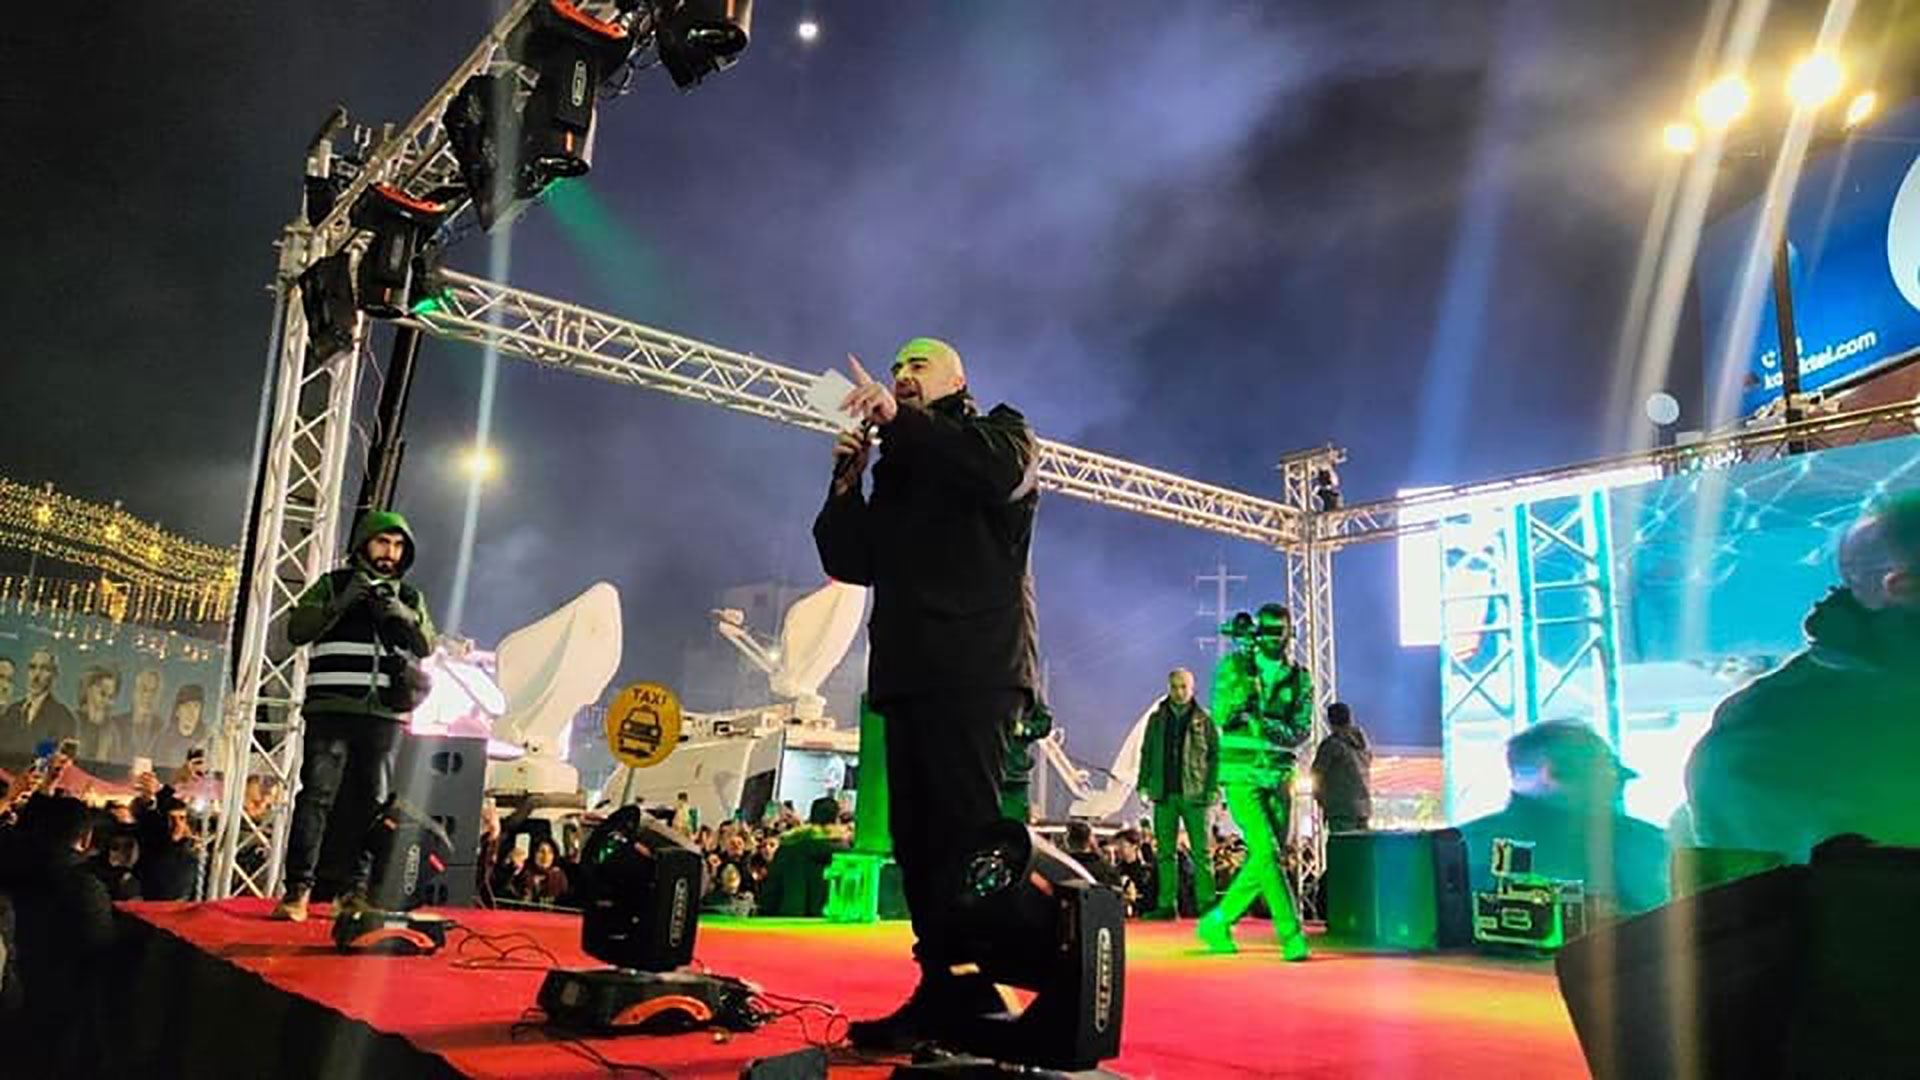 الرئيس بافل جلال طالباني يشارك الجماهير المحتفلة بالعام الجديد 